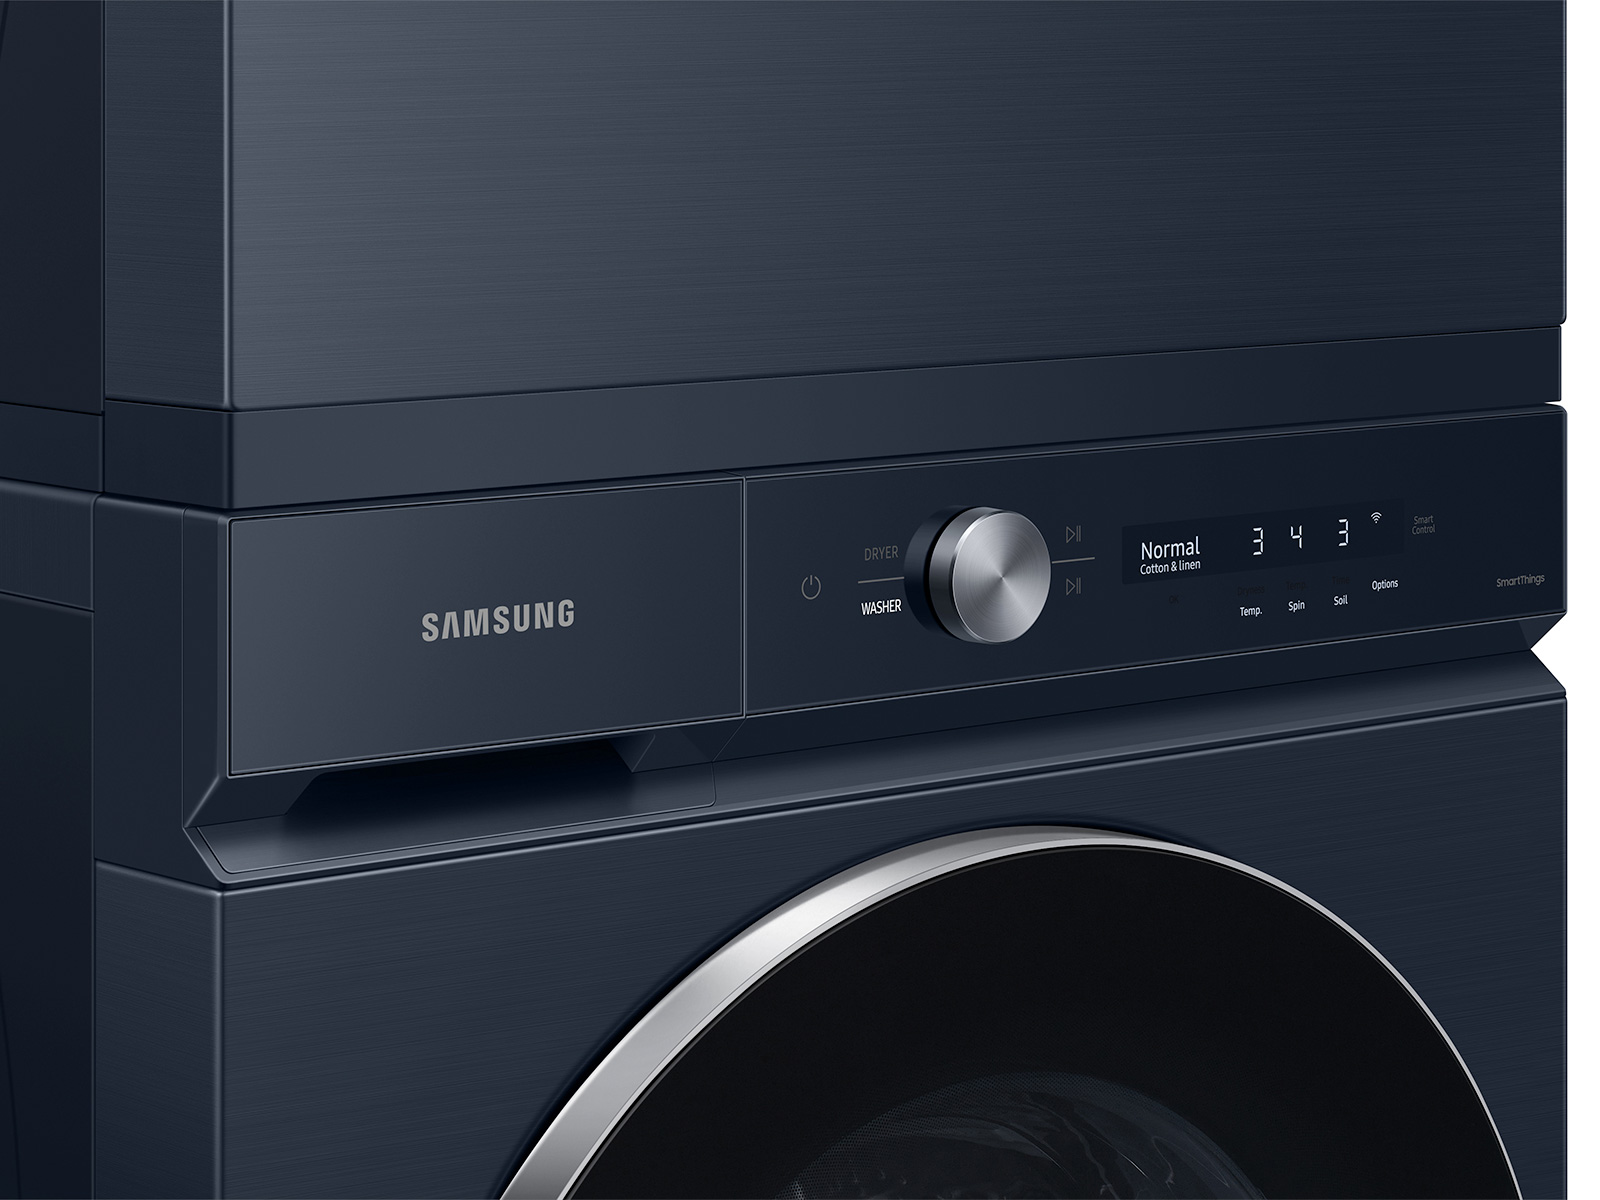 Esprit Electro - 💧Machine à laver Samsung 9kg 1400 tours